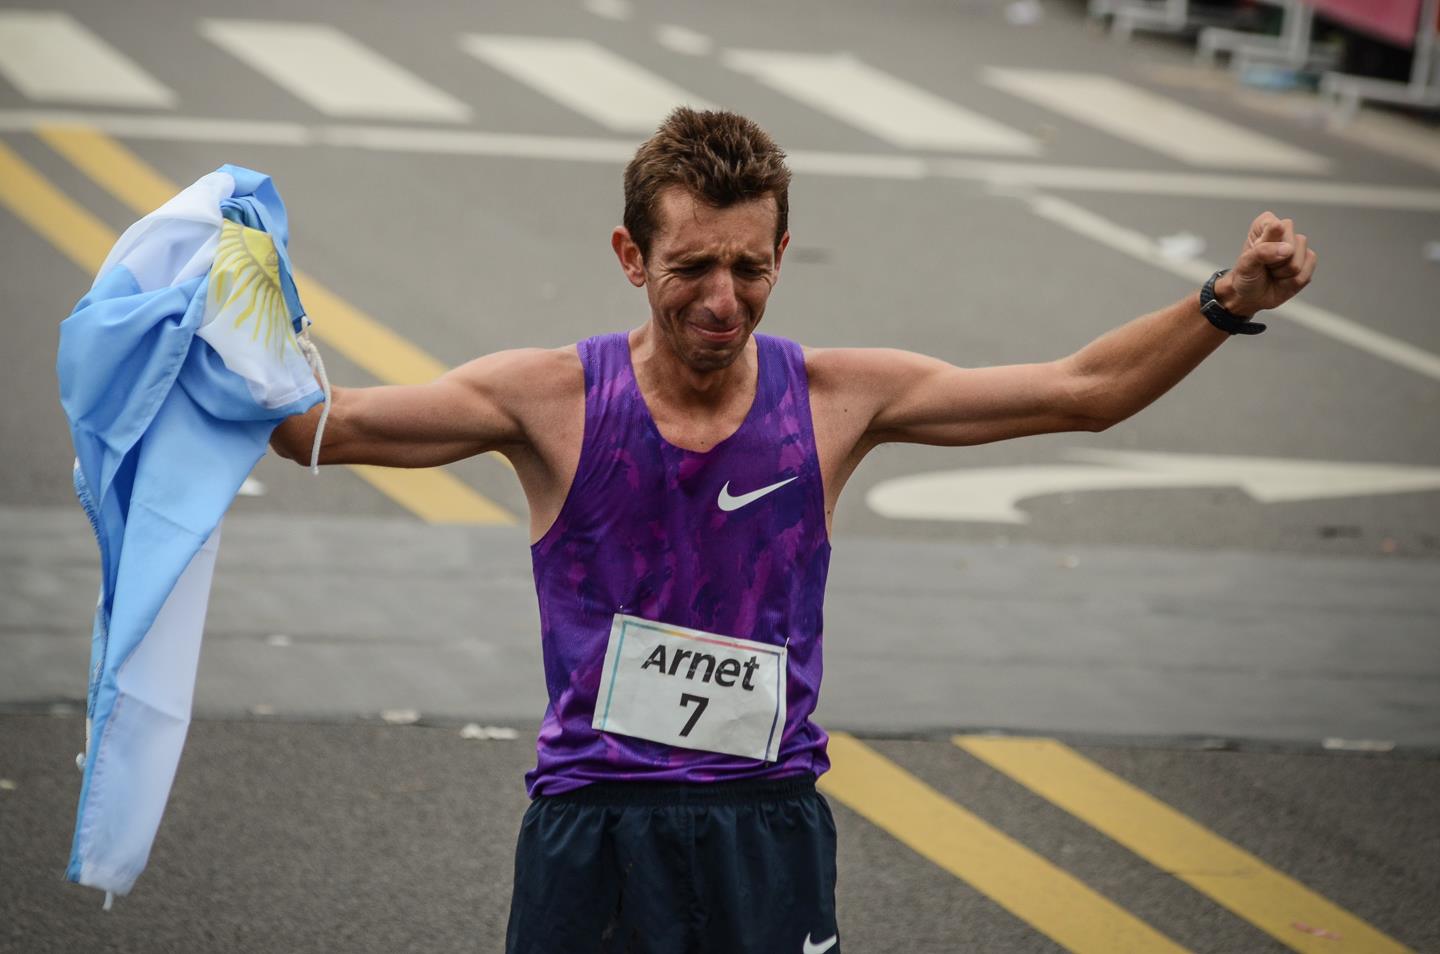 Luis Molina Maraton de Buenos Aires 2015 Locos Por Correr 01